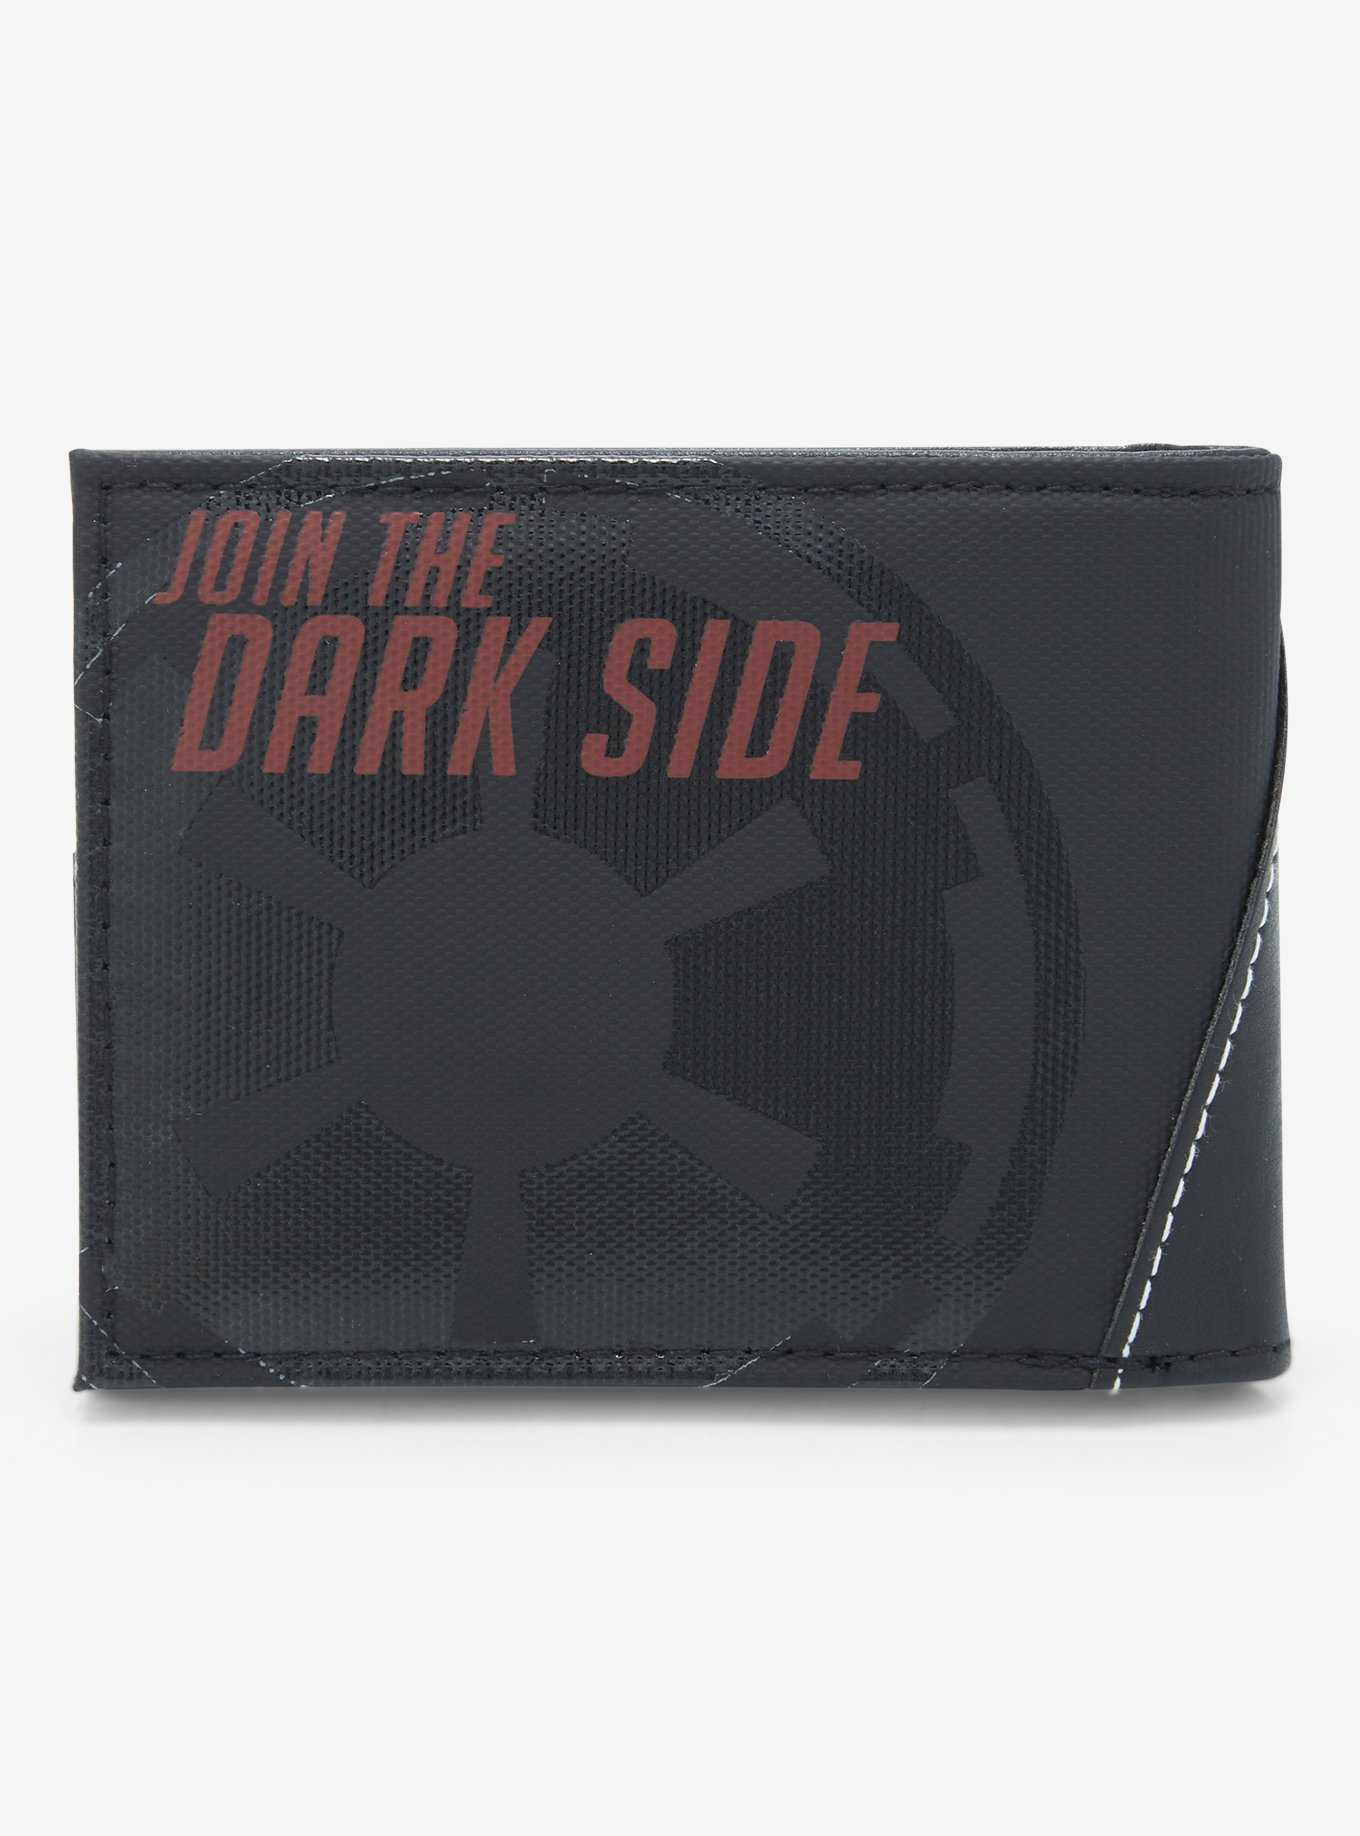 Star Wars Empire Dark Side Bifold Wallet , , hi-res